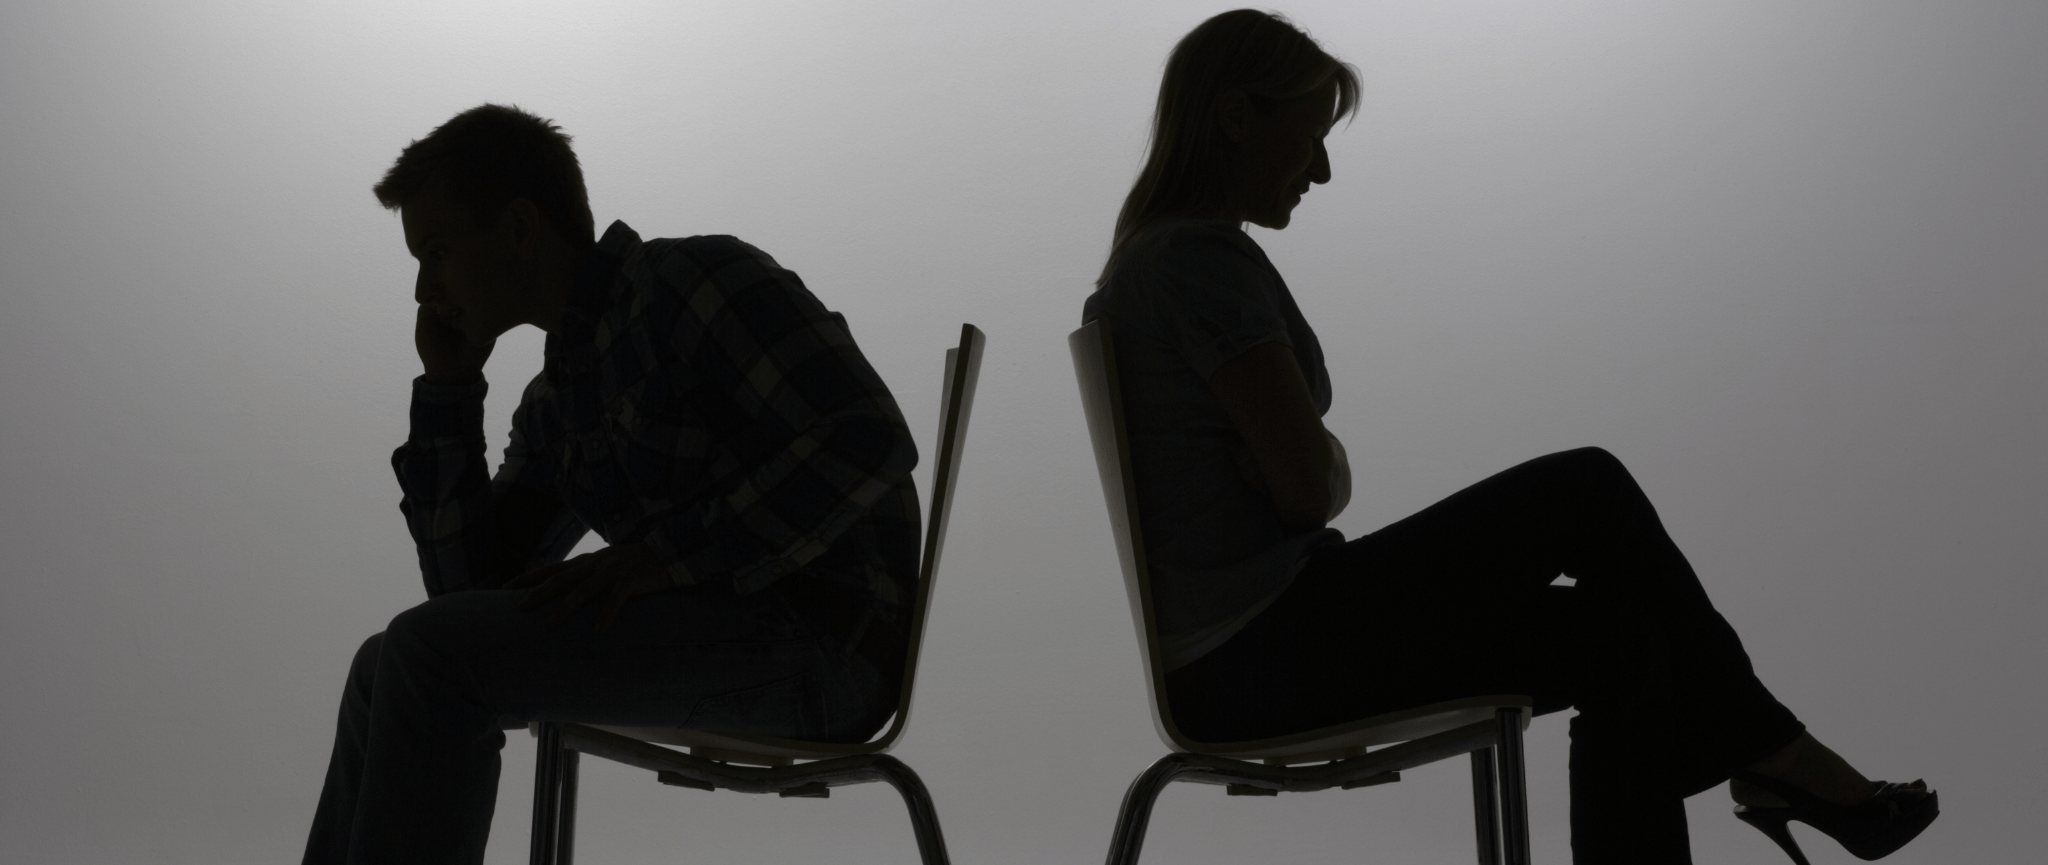 Les silhouettes d’un homme et d’une femme assis dos à dos et faisant face en direction opposée